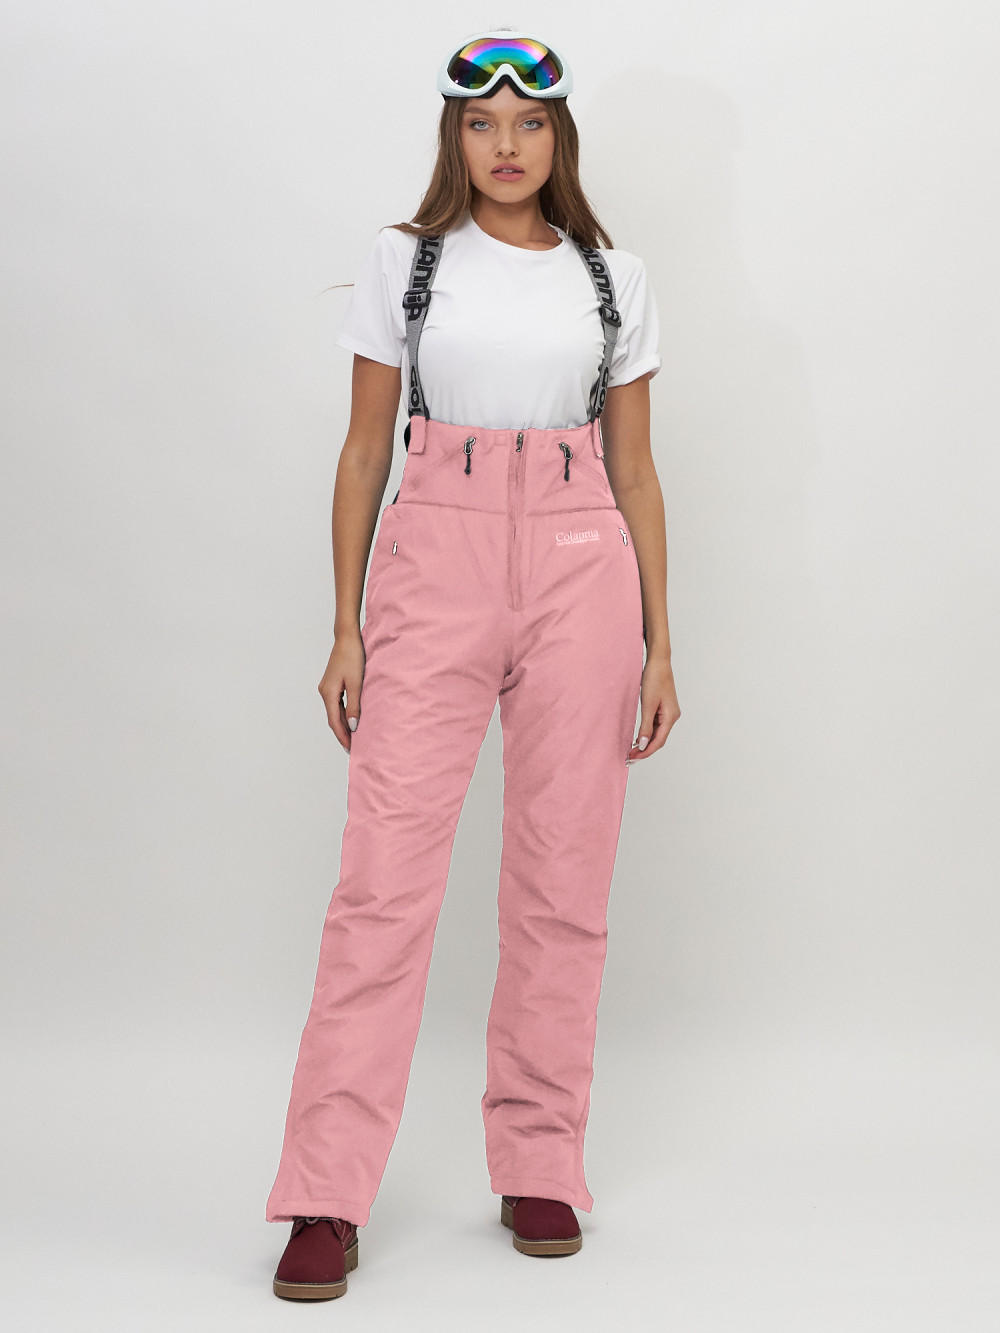 Купить Полукомбинезон брюки горнолыжные женские розового цвета 66789R